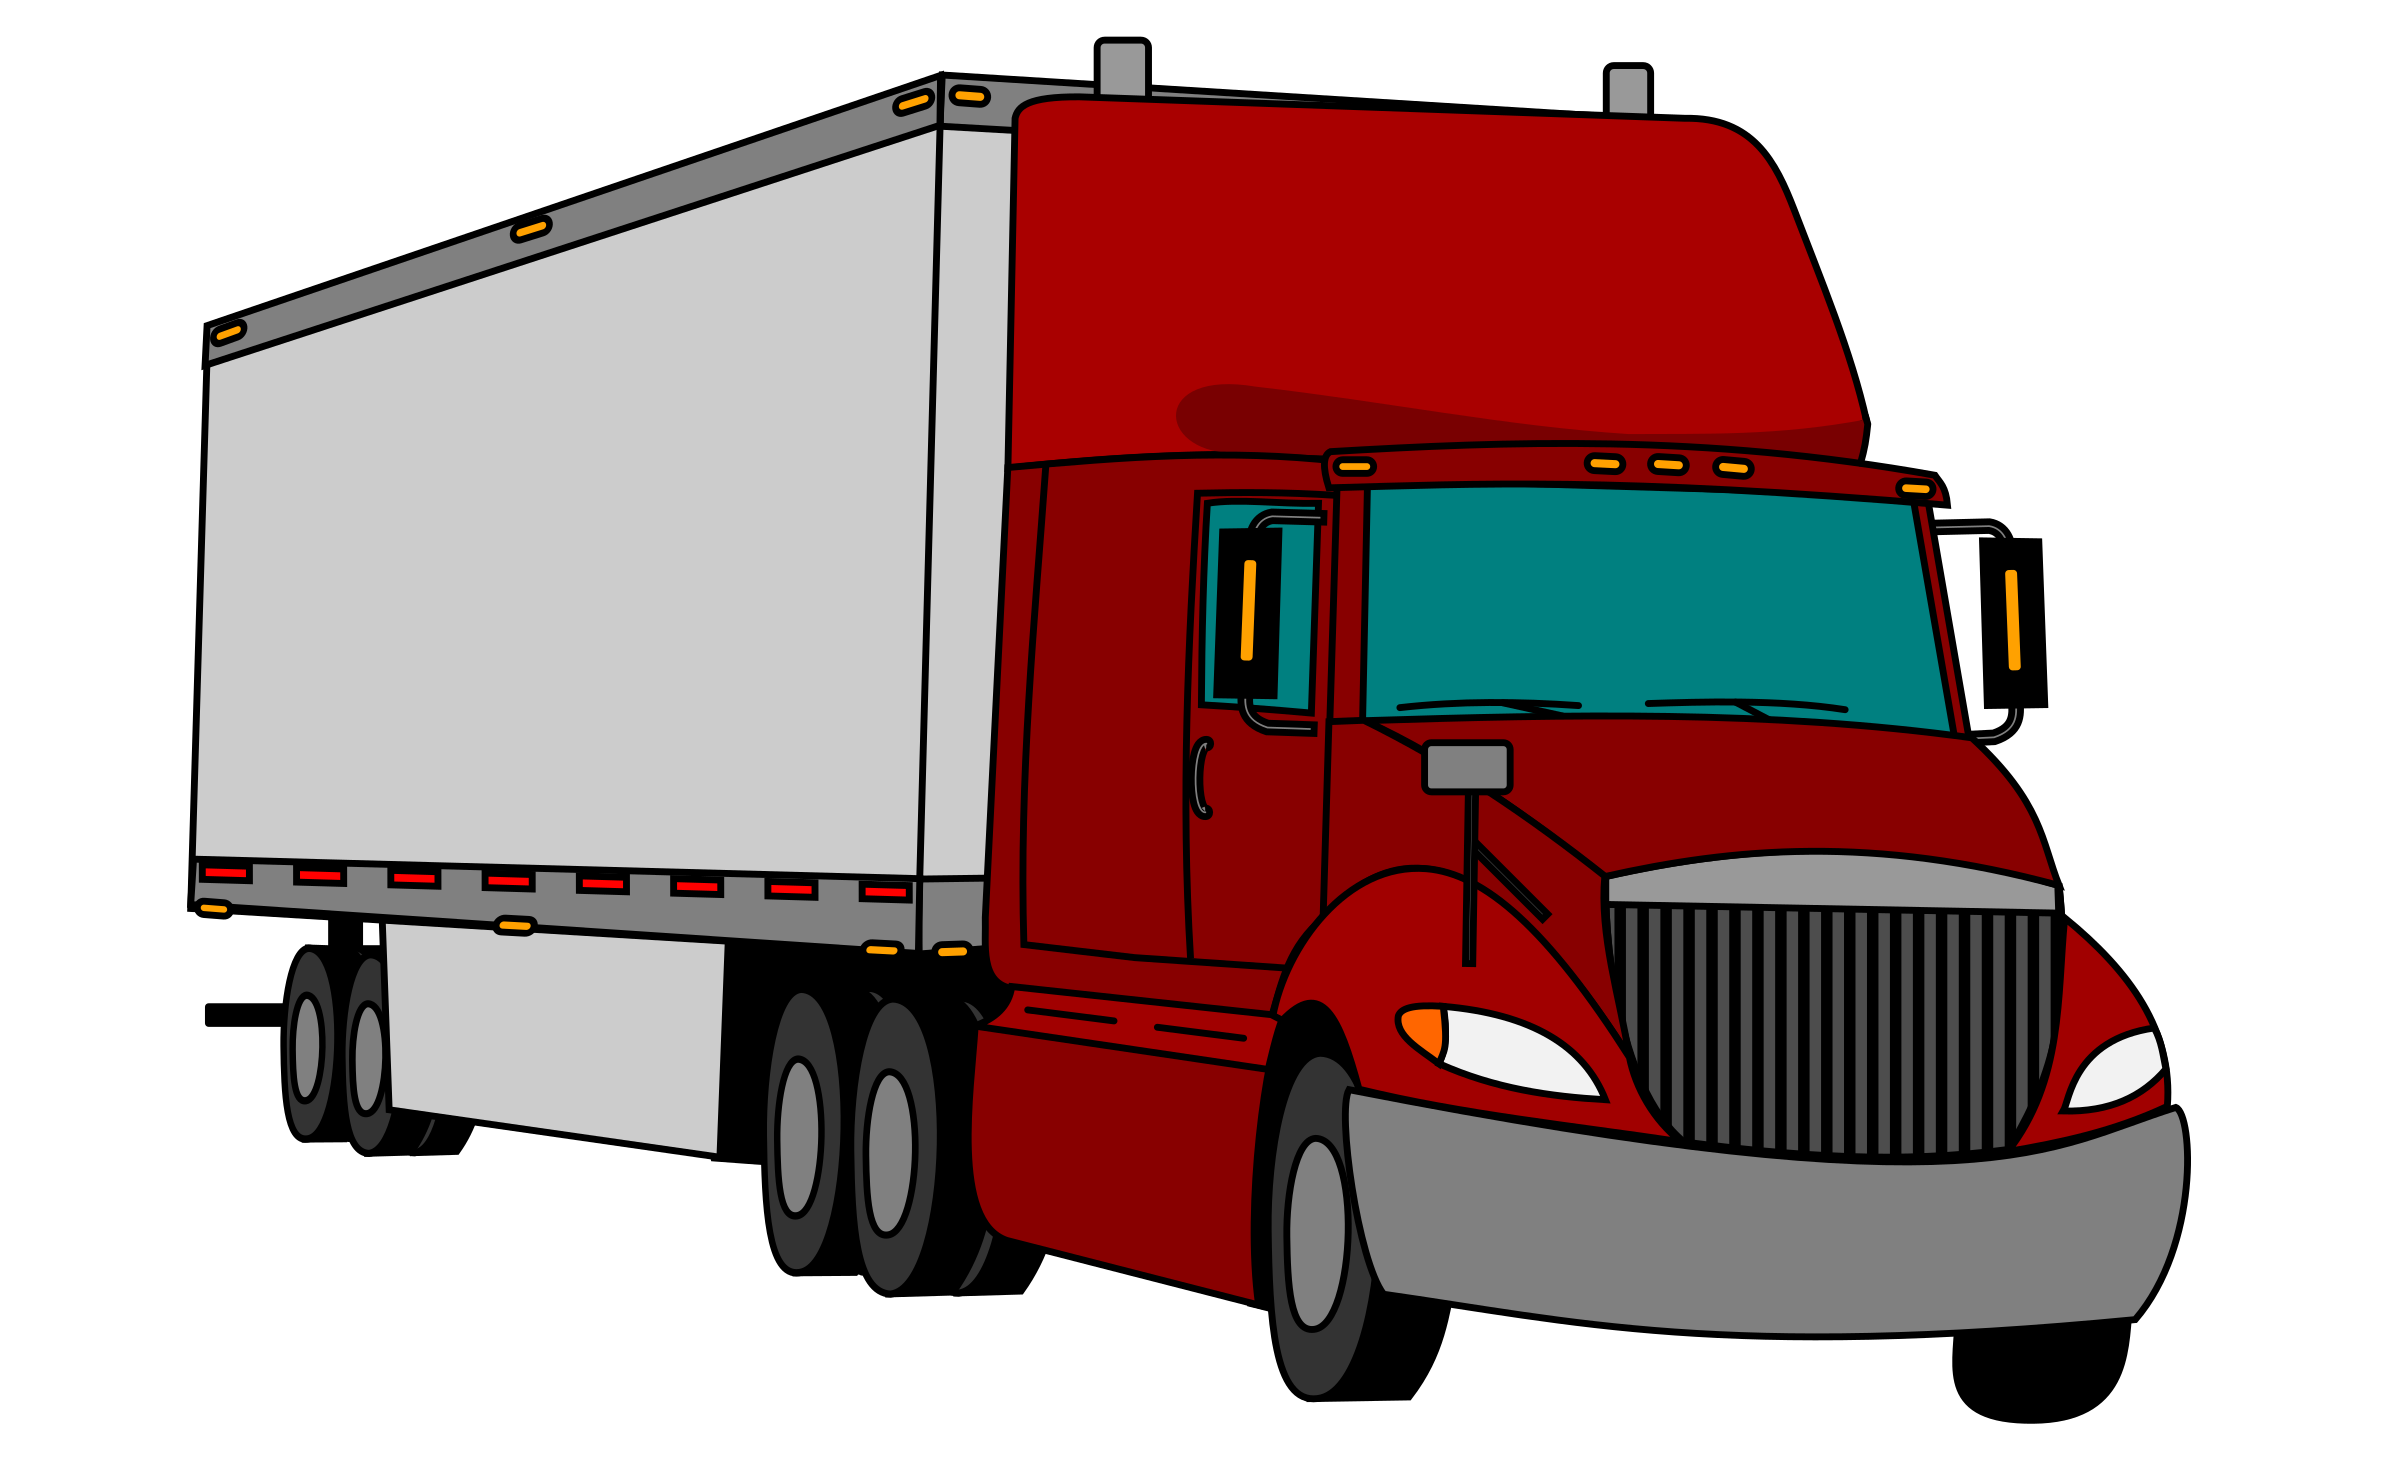 Car hauler clipart - 🧡 Pickup Truck Car drawing free image download.